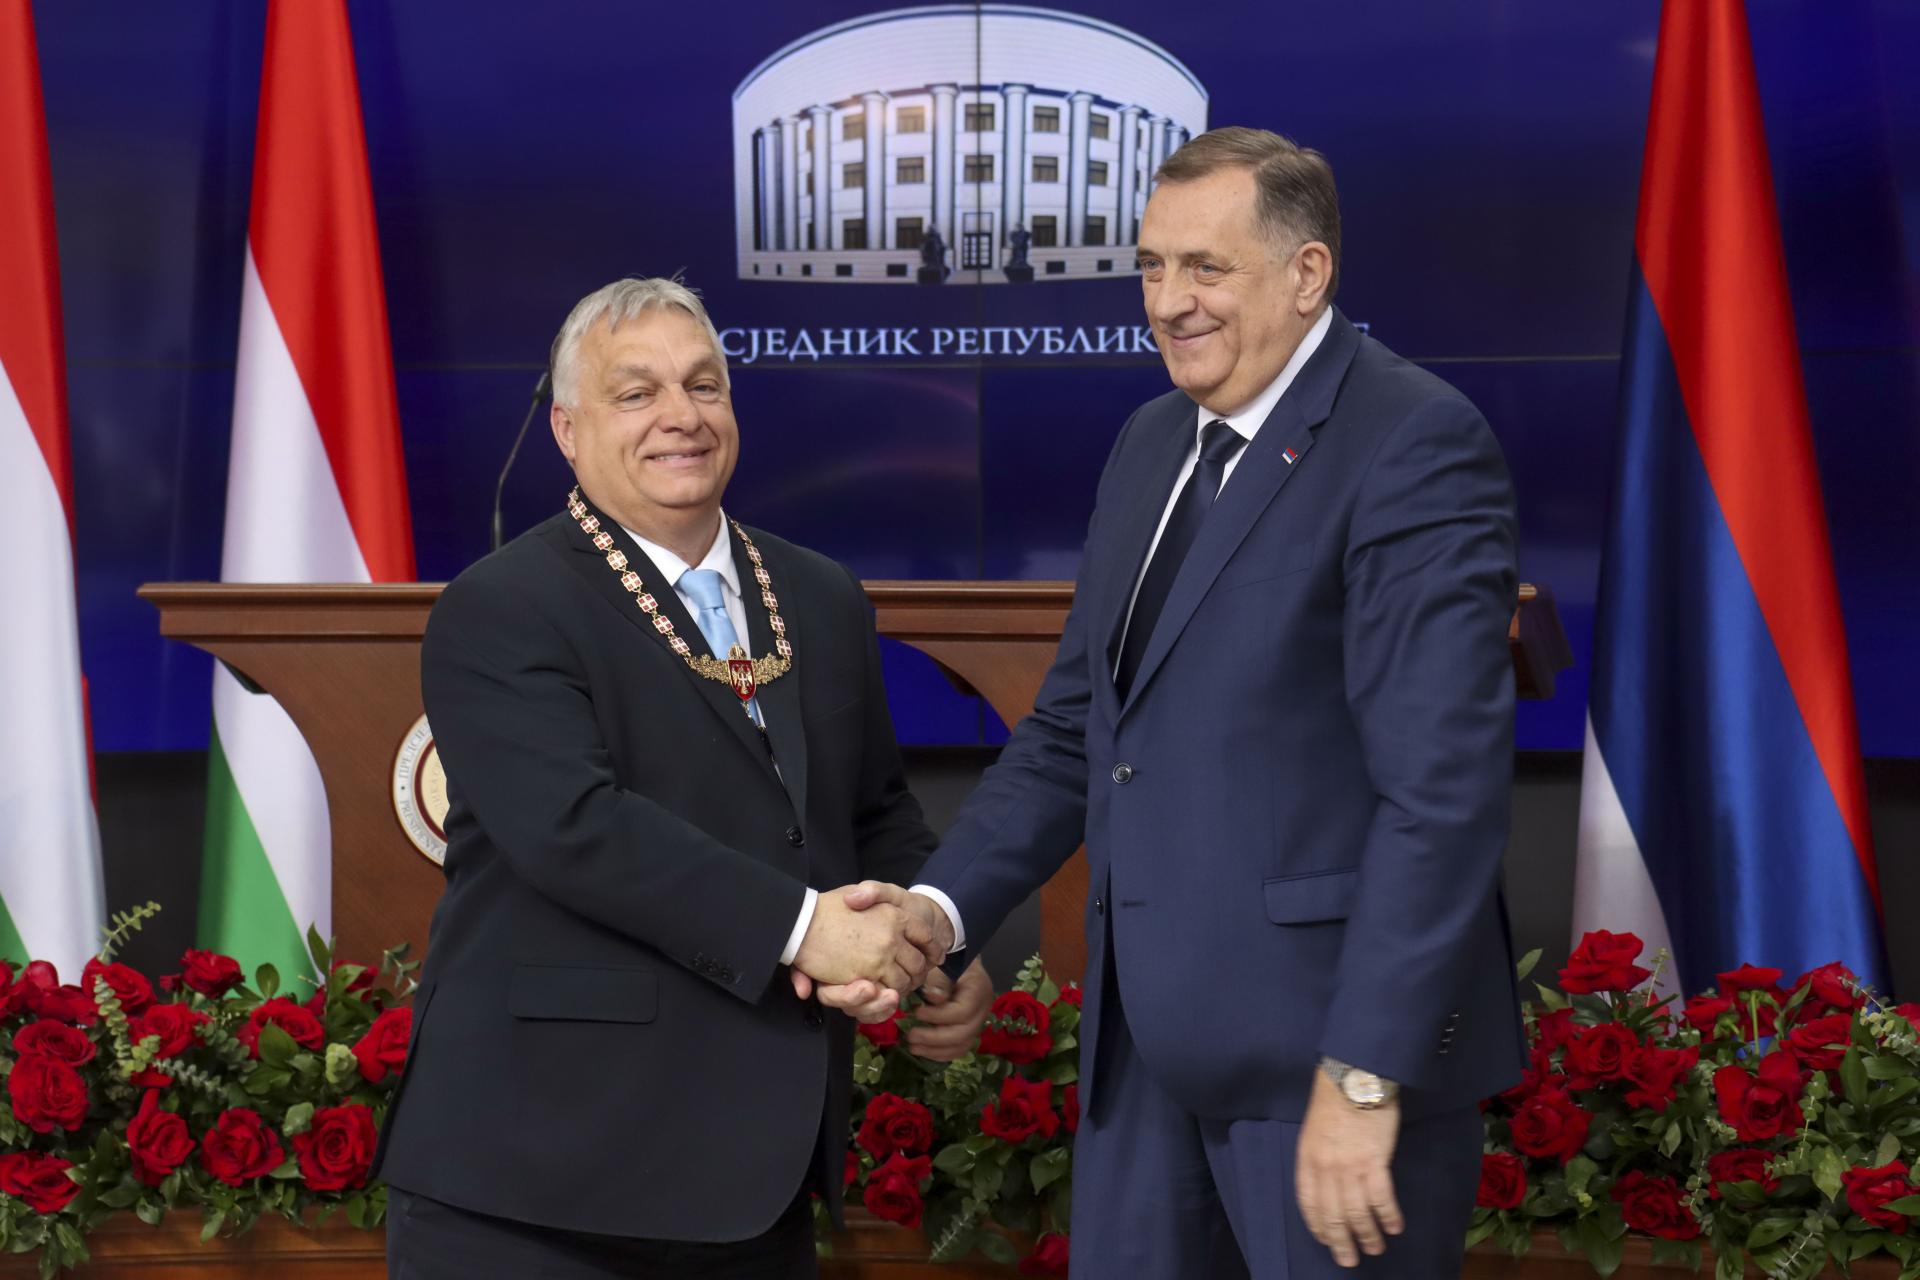 Vojna na Ukrajine je dvojnásobne zlá pre západný Balkán, povedal Orbán v Banja Luke